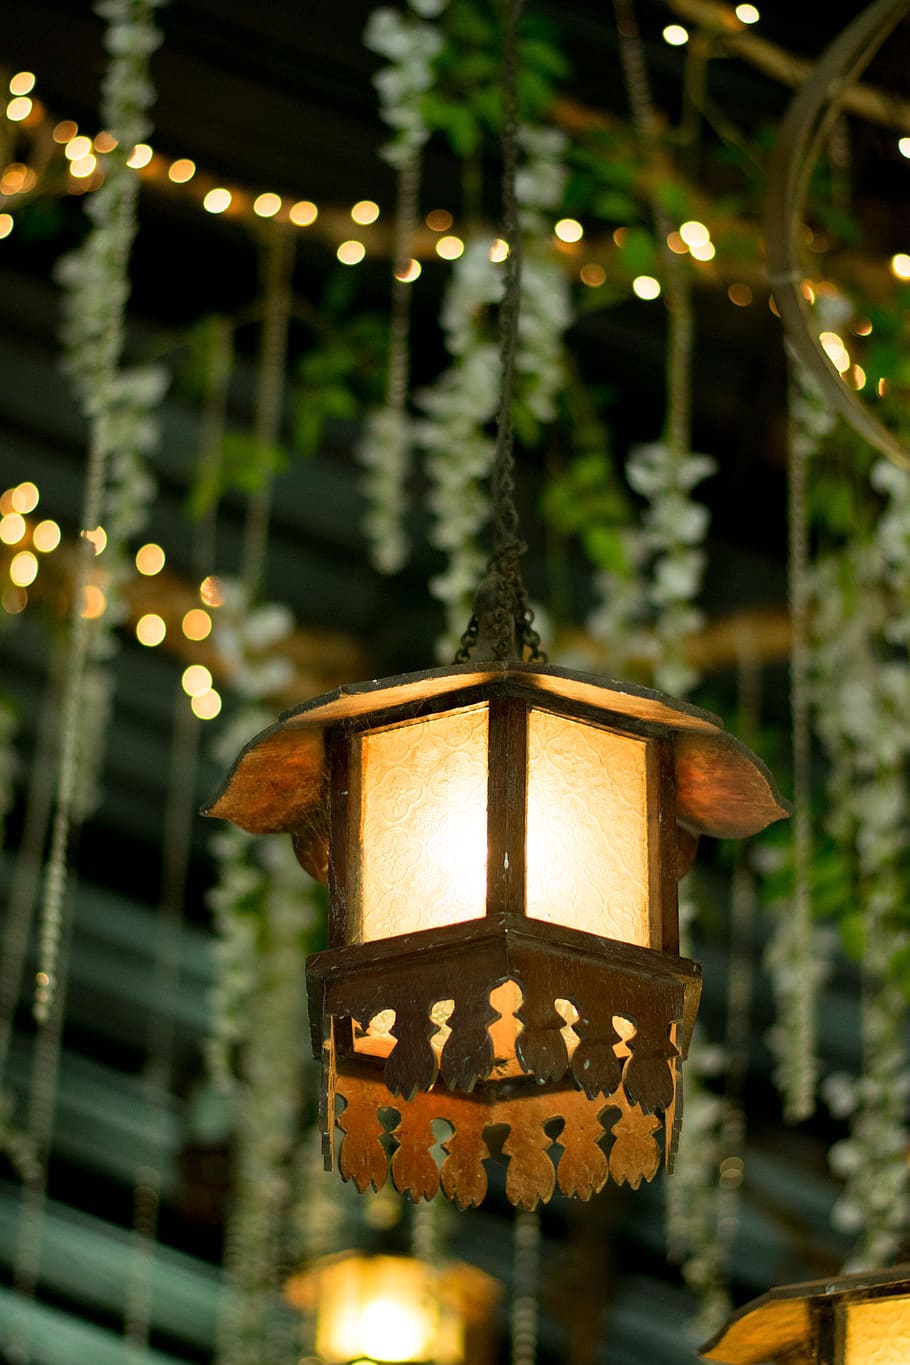 linterna, luces de navidad, jardín, lámpara, decoración, decorativa, vintage, iluminado, equipo de iluminación, foco en primer plano